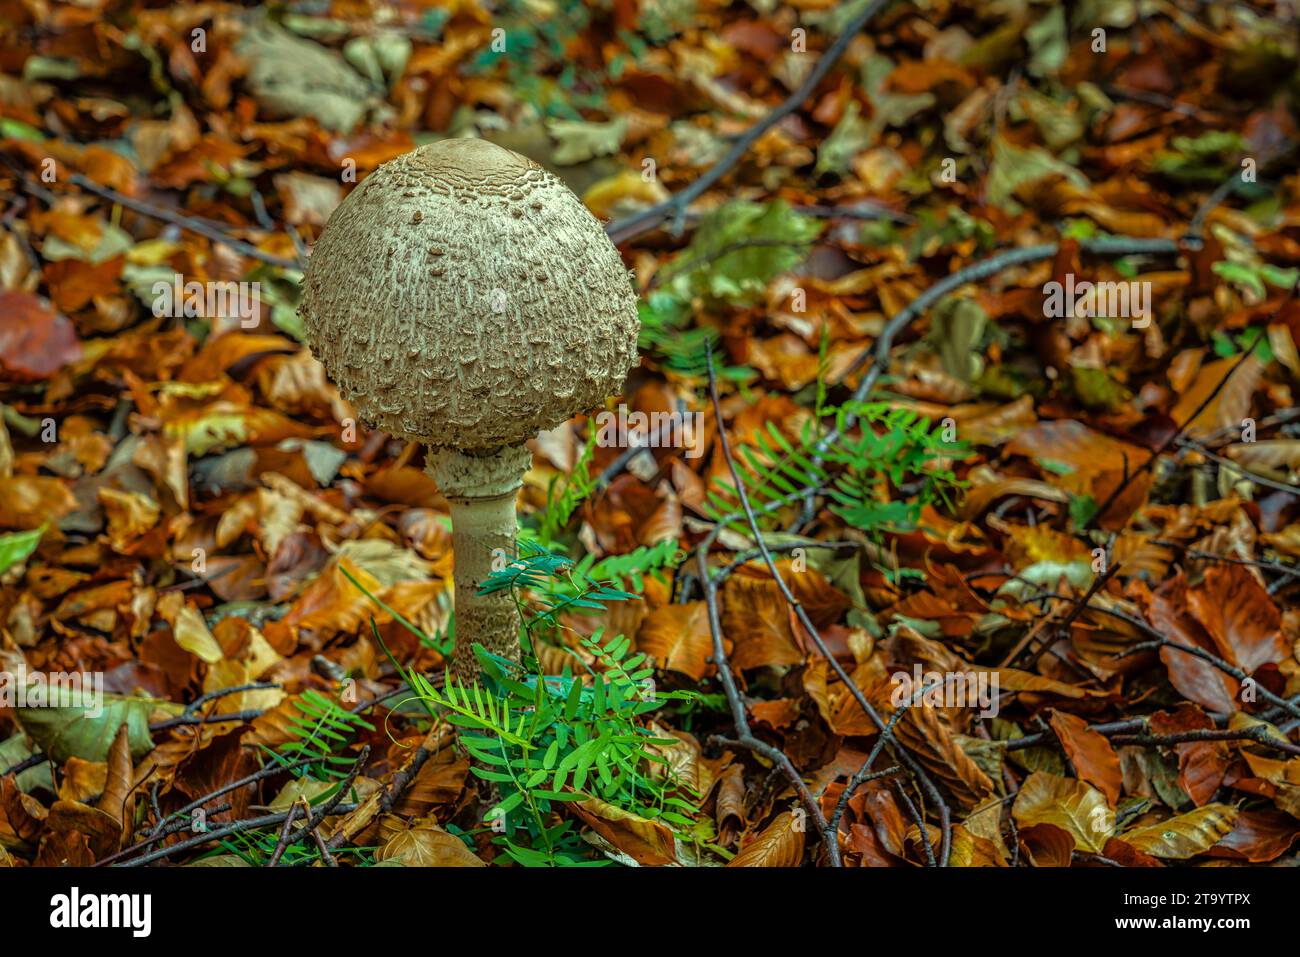 Bacchetta, Macrolepiota procera, grande fungo commestibile. Abruzzo, Italia, Europa Foto Stock